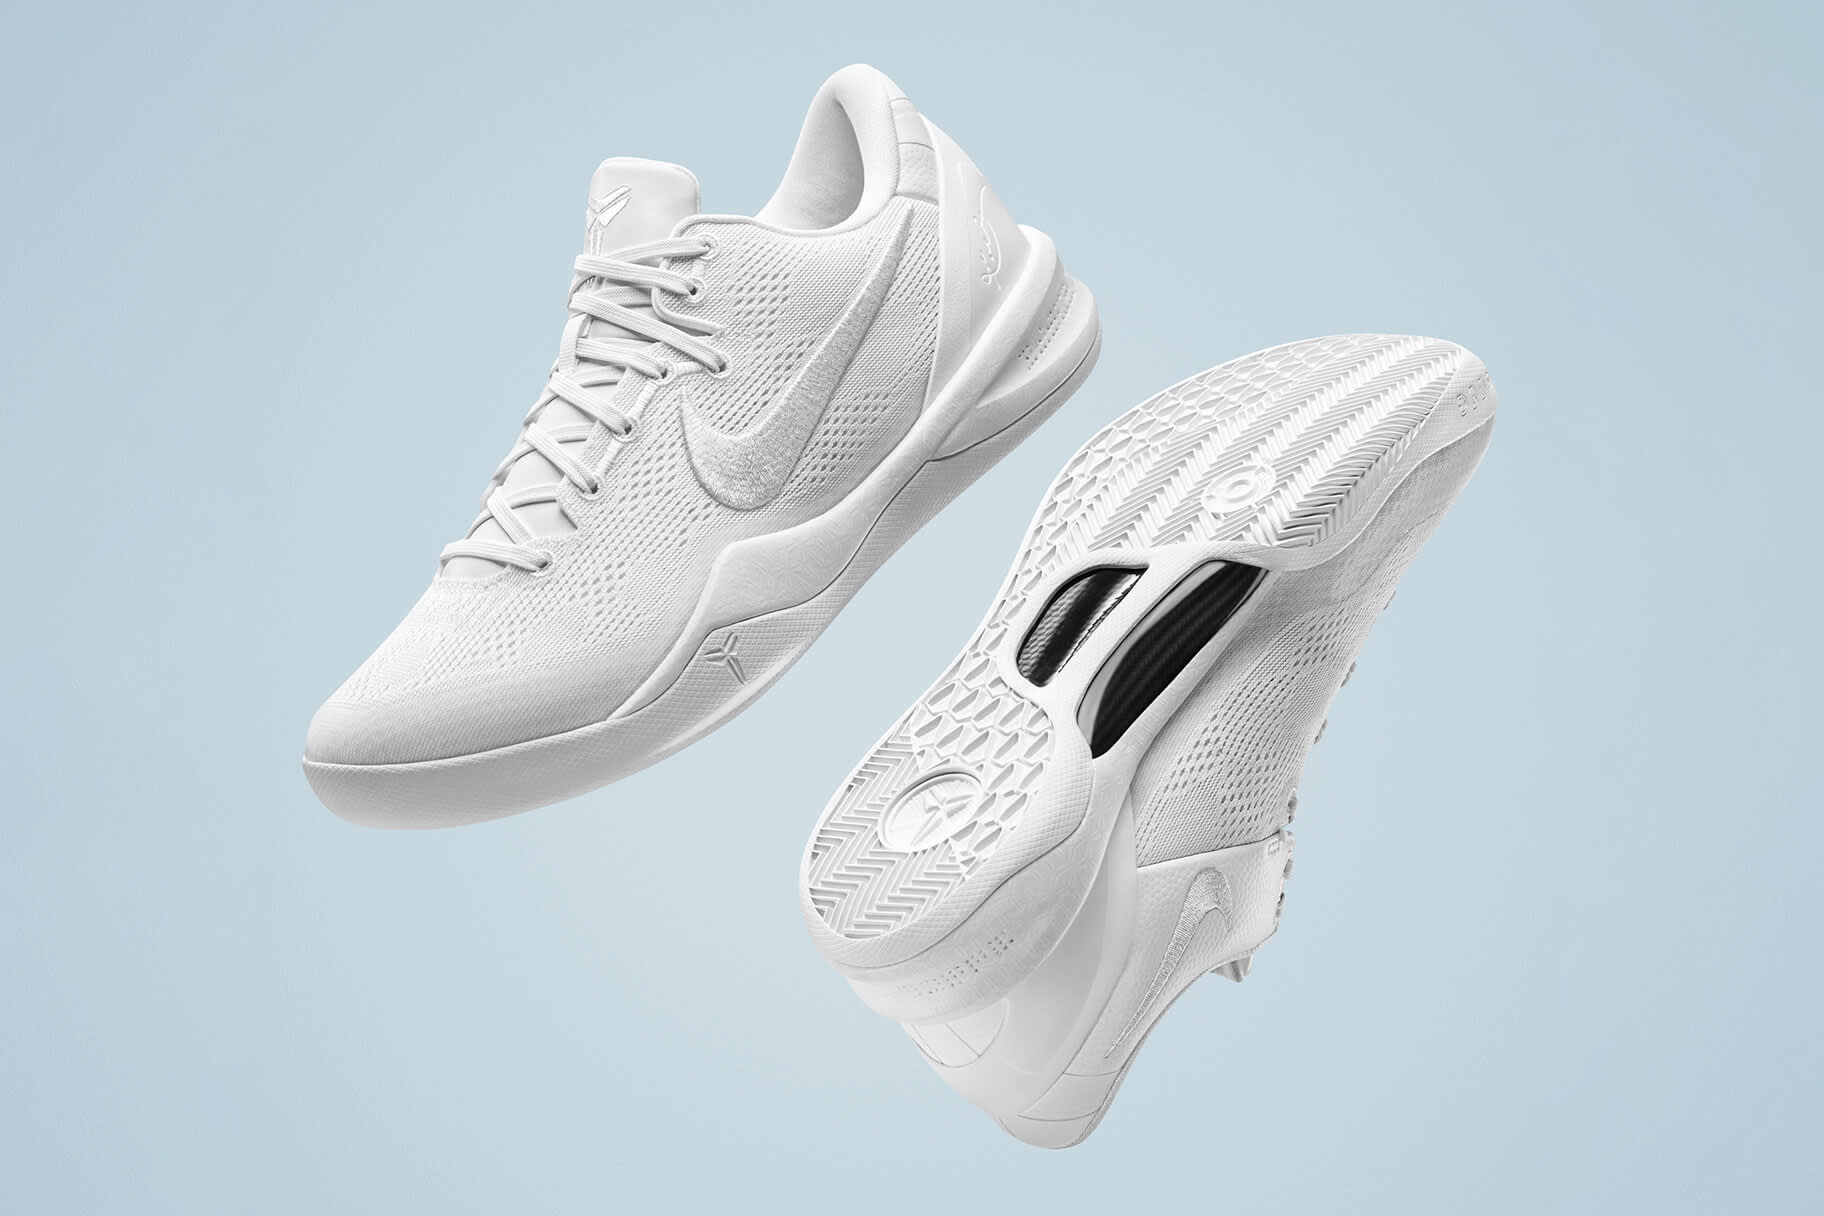 Nike brengt de Kobe 8 uit ter nagedachtenis aan de basketbalsuperster